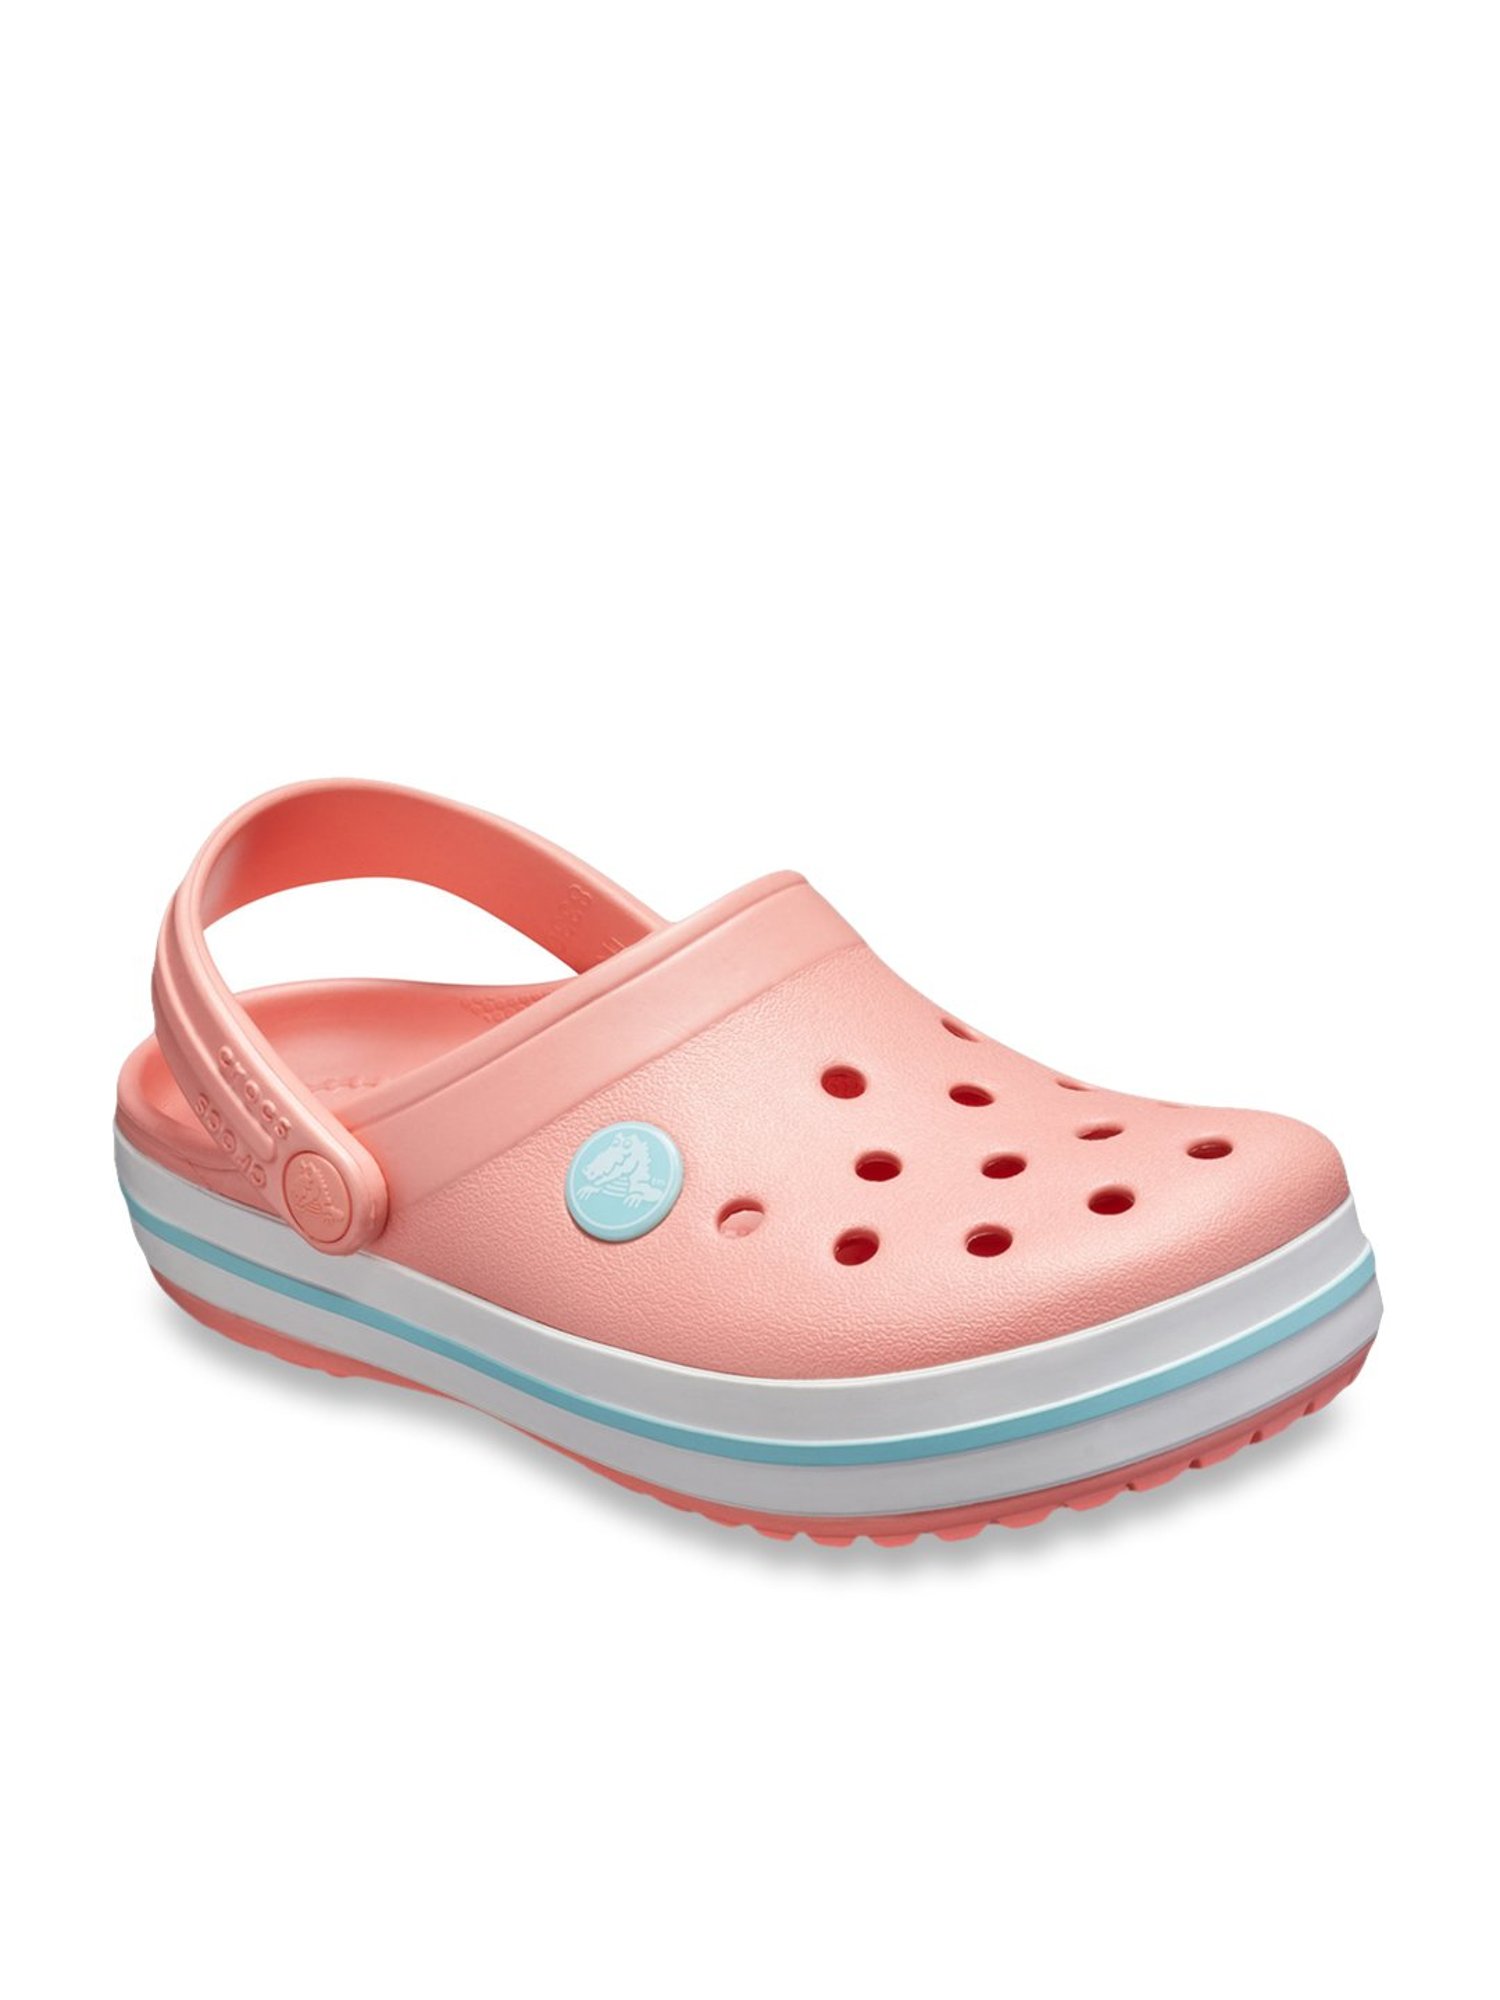 crocs melon pink